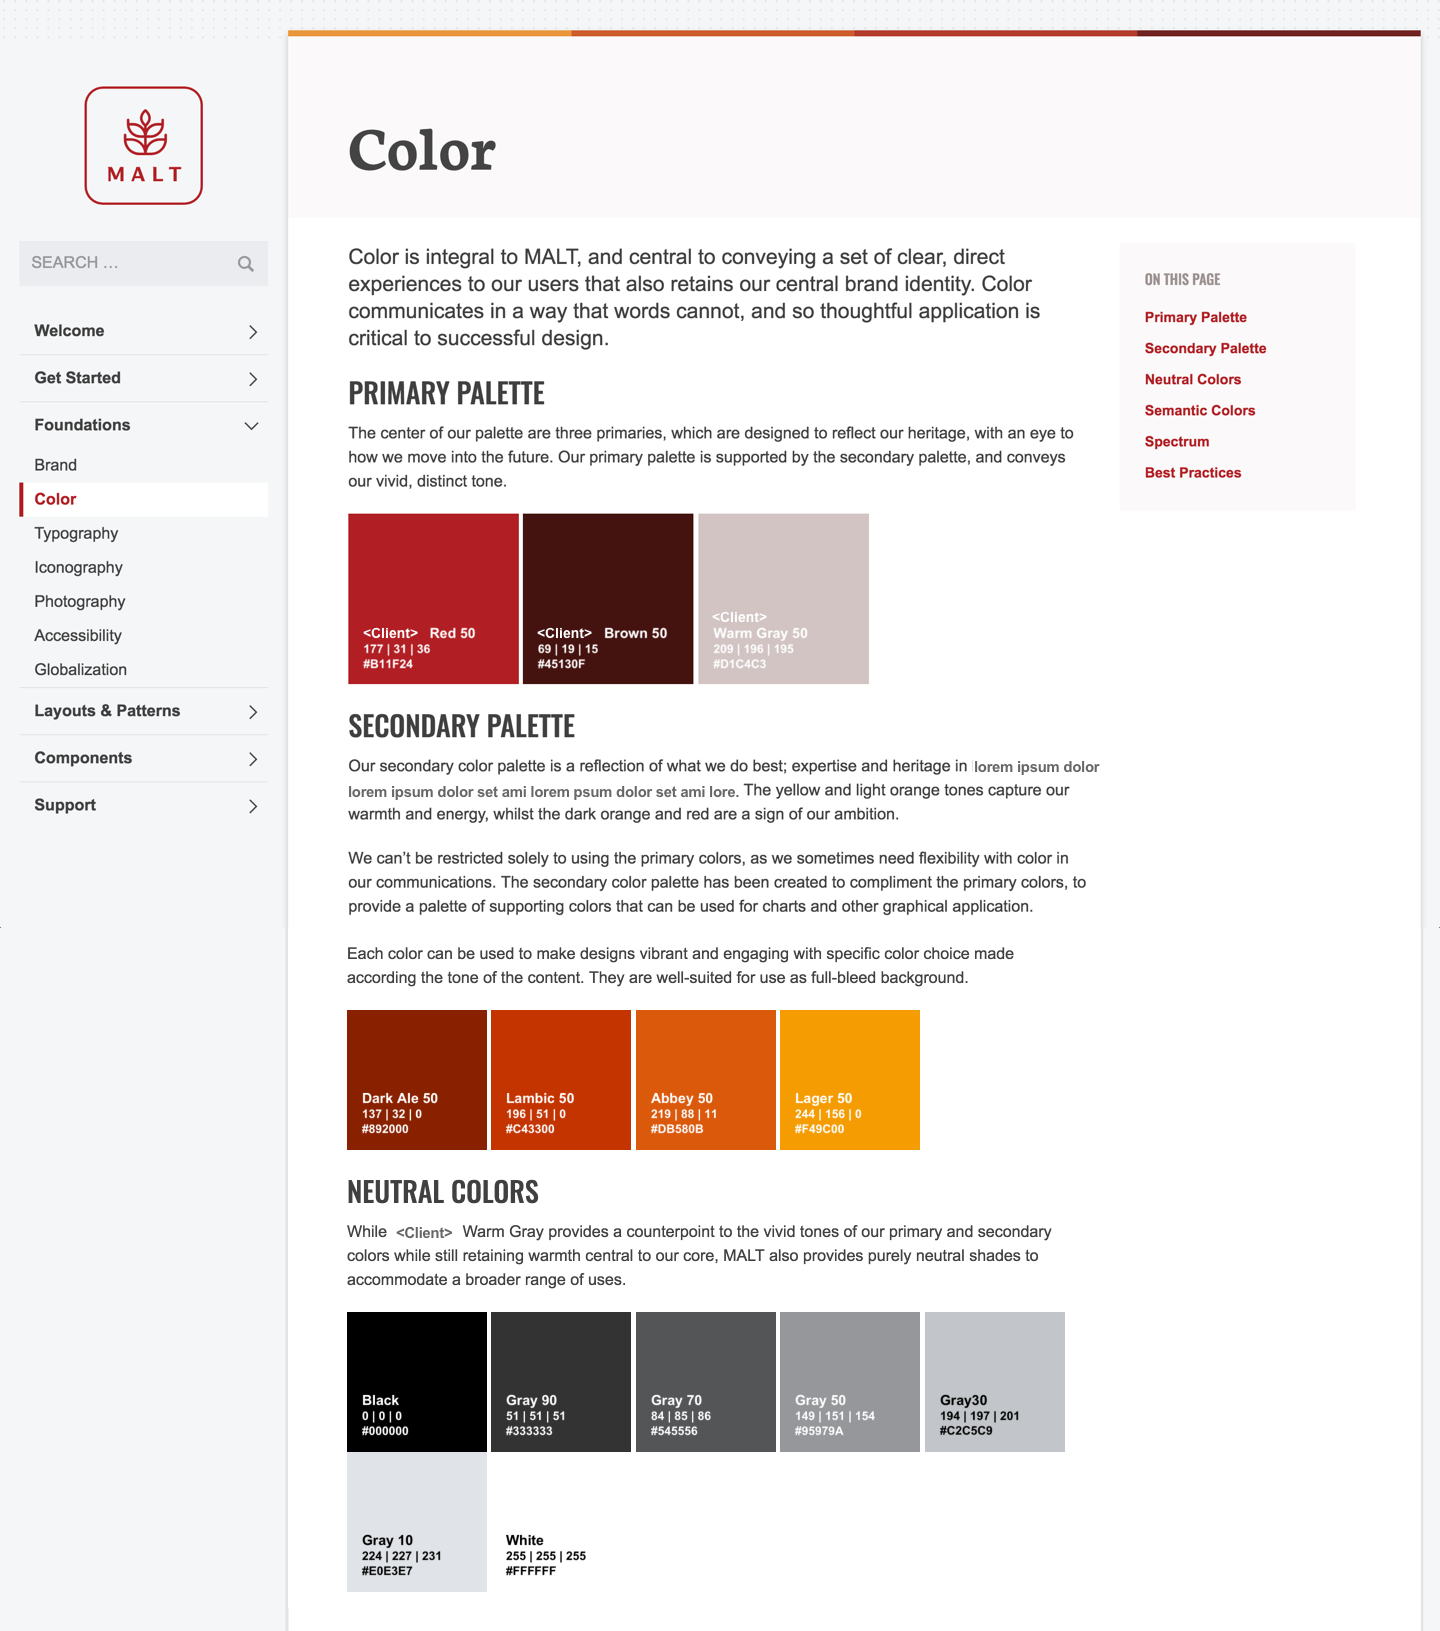 MALT Design System - Color page